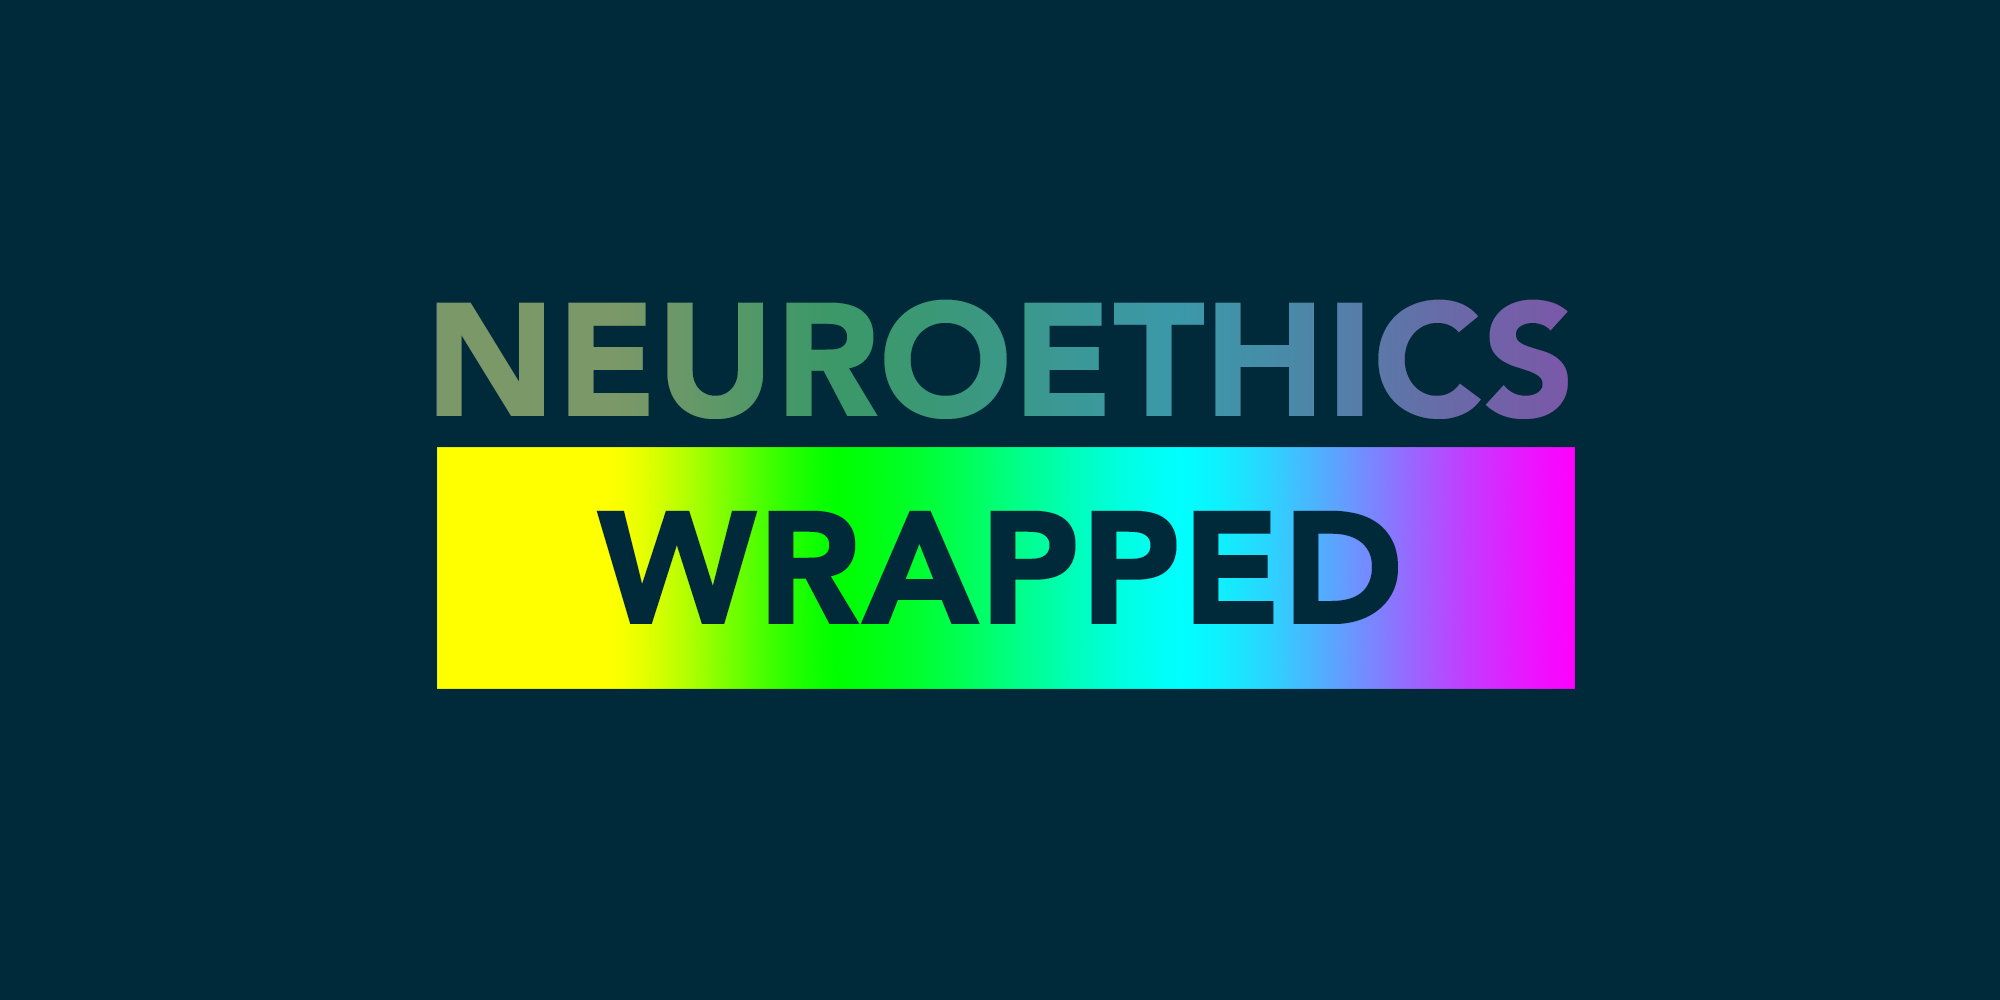 Neuroethics wrapped rainbow background